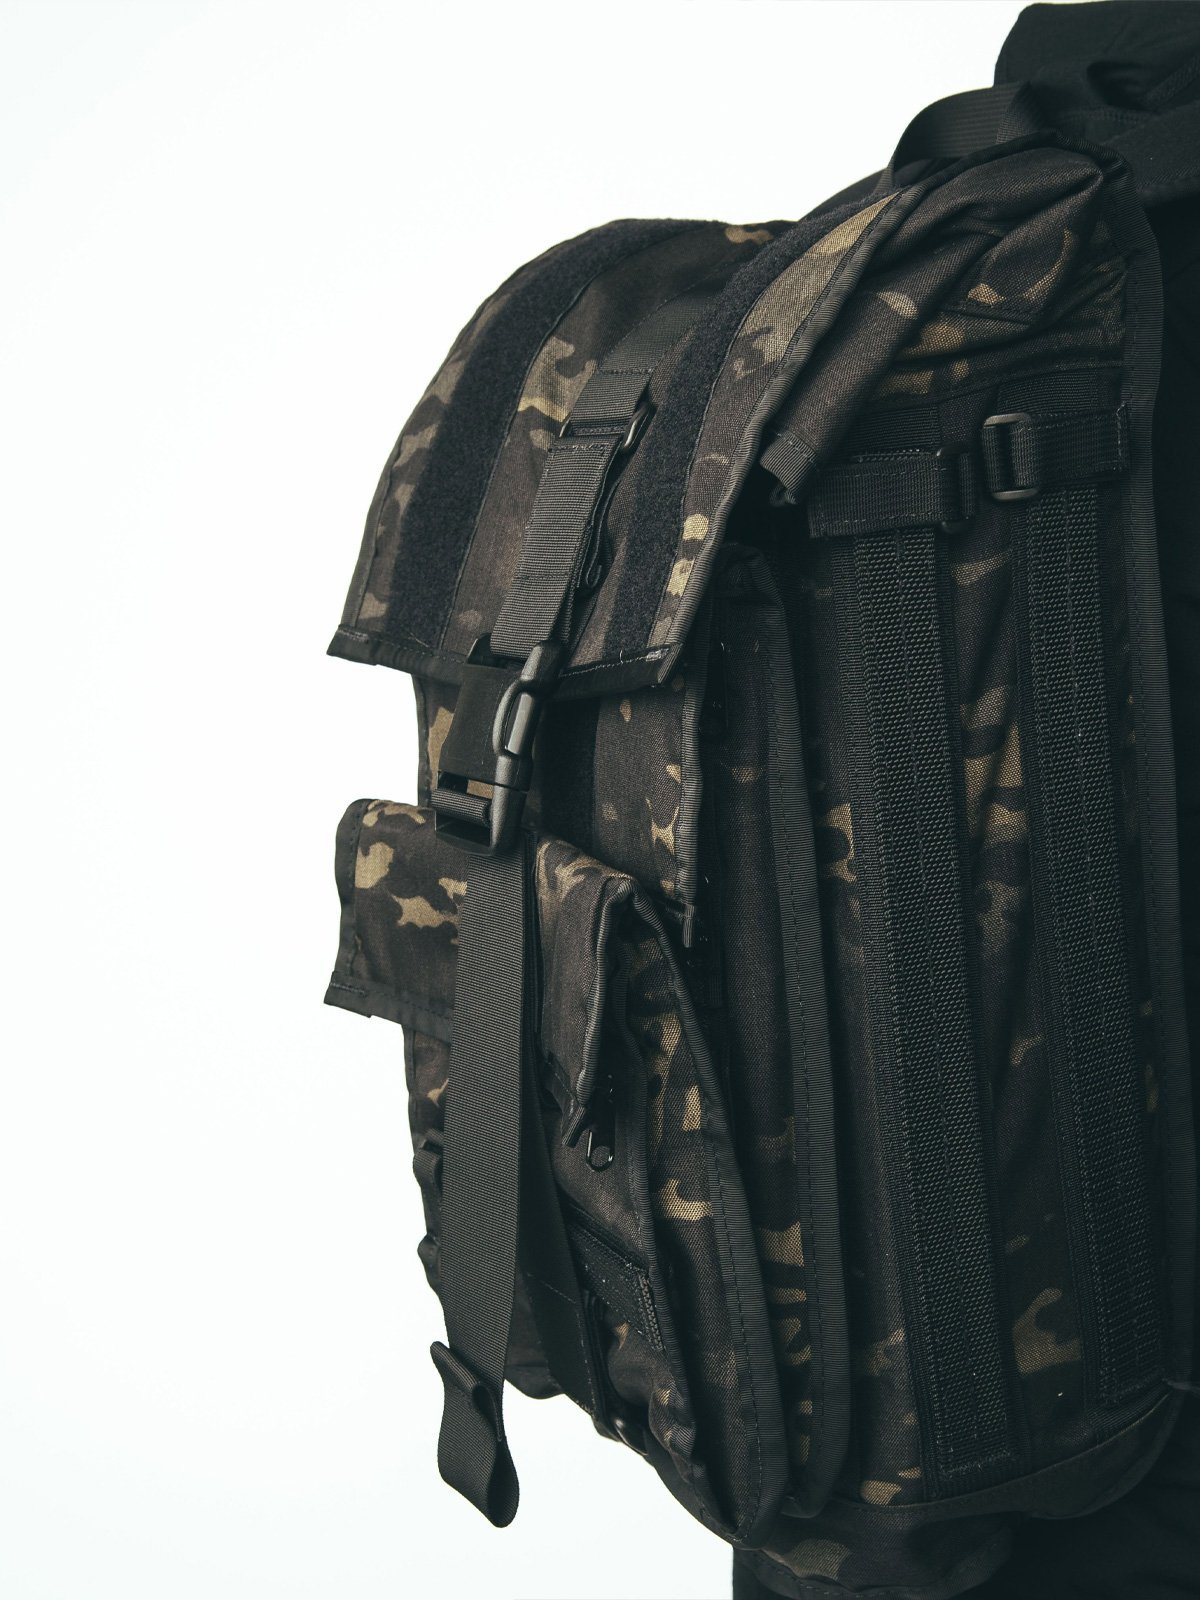 Arkiv Tool Pocket by Mission Workshop - Weersbestendige tassen & technische kleding - San Francisco & Los Angeles - Gebouwd om te weerstaan - Voor altijd gegarandeerd